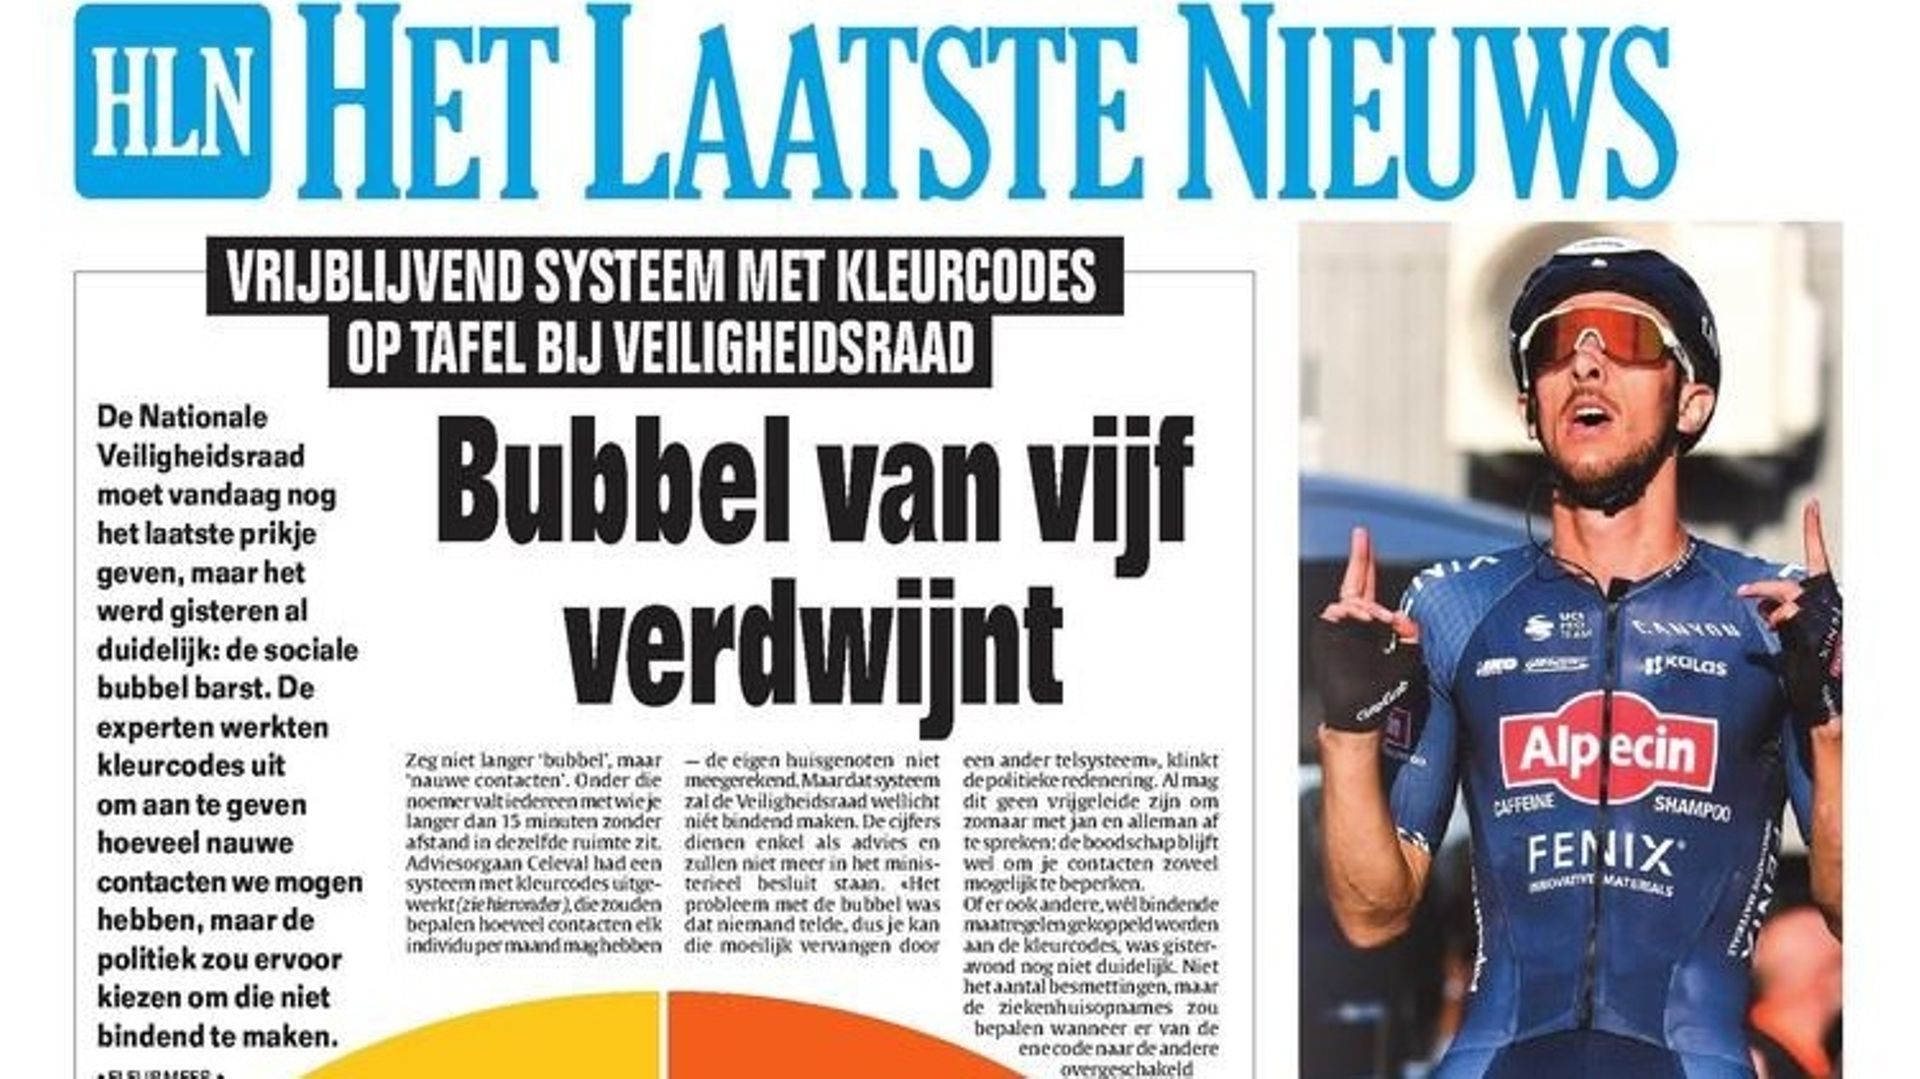 Une du quotidien flamand Het Laatste Nieuws.